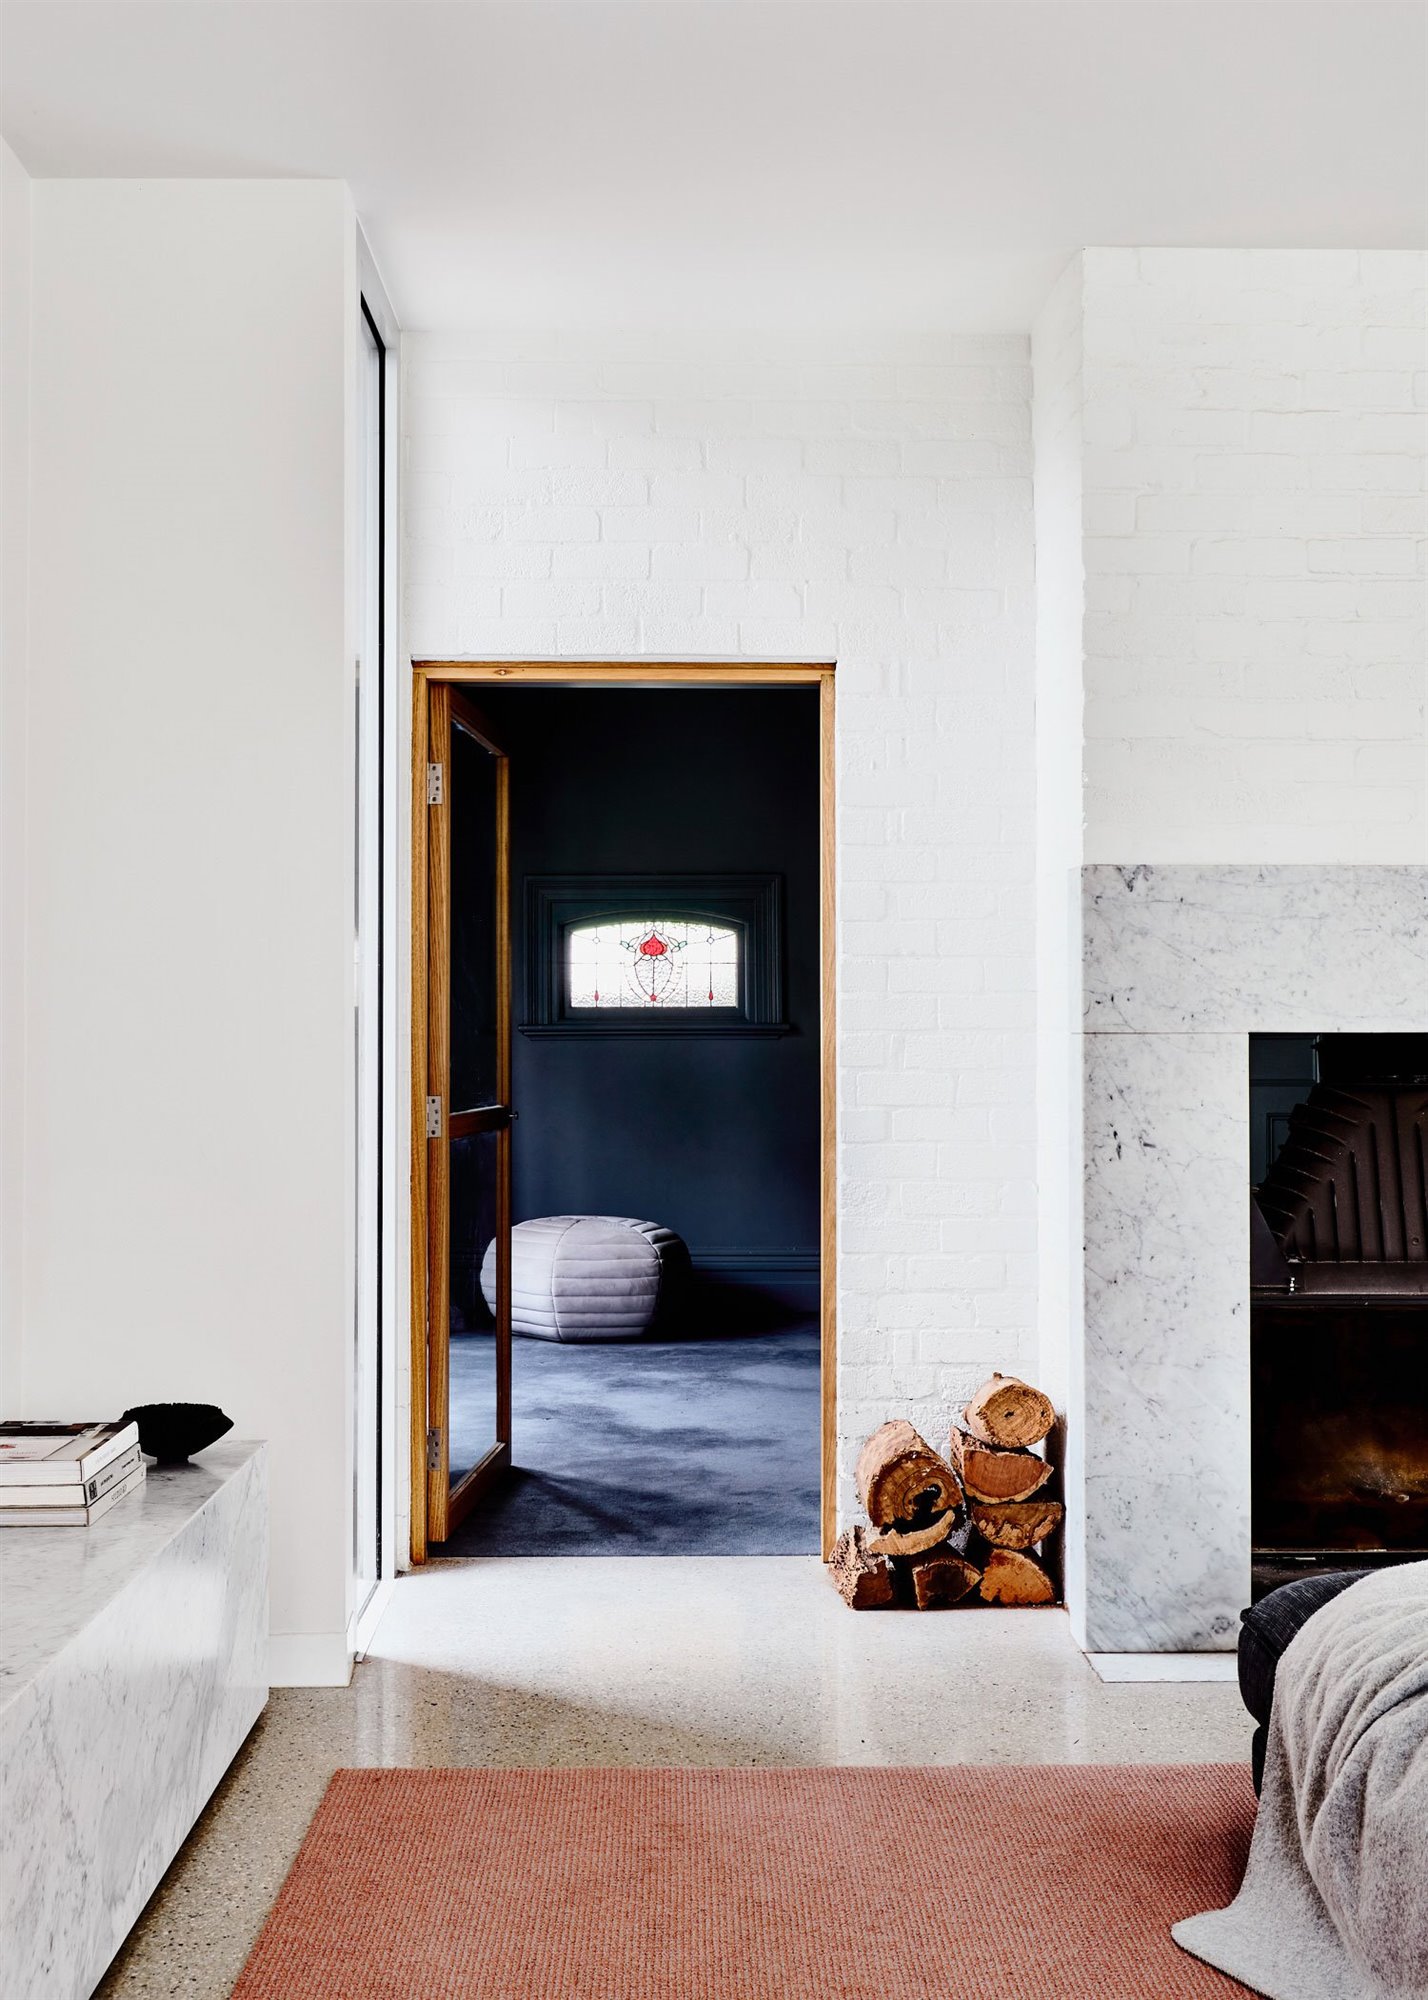 Salon con chimenea de piedra de una casa en Australia